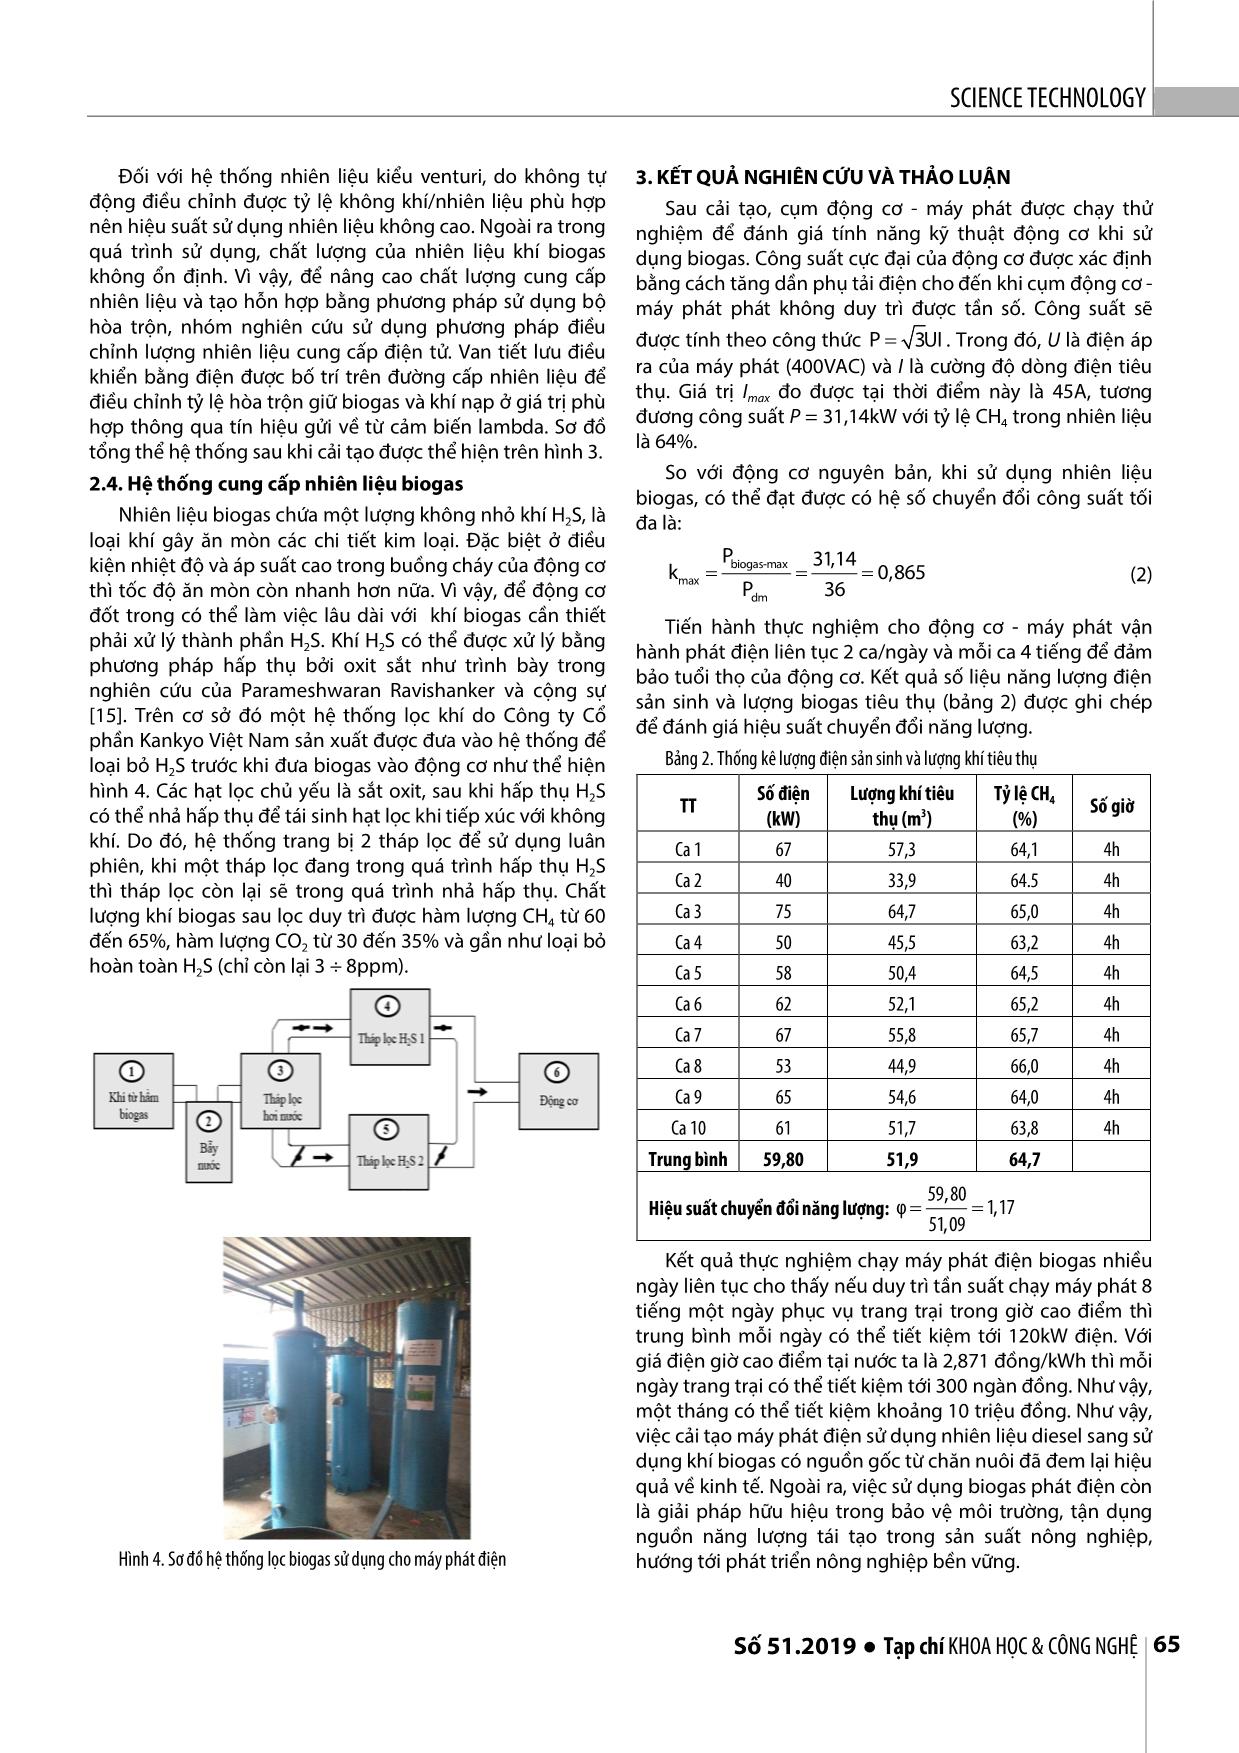 Nghiên cứu cải tạo máy phát điện cỡ vừa sử dụng nhiên liệu khí biogas từ chăn nuôi trang 4